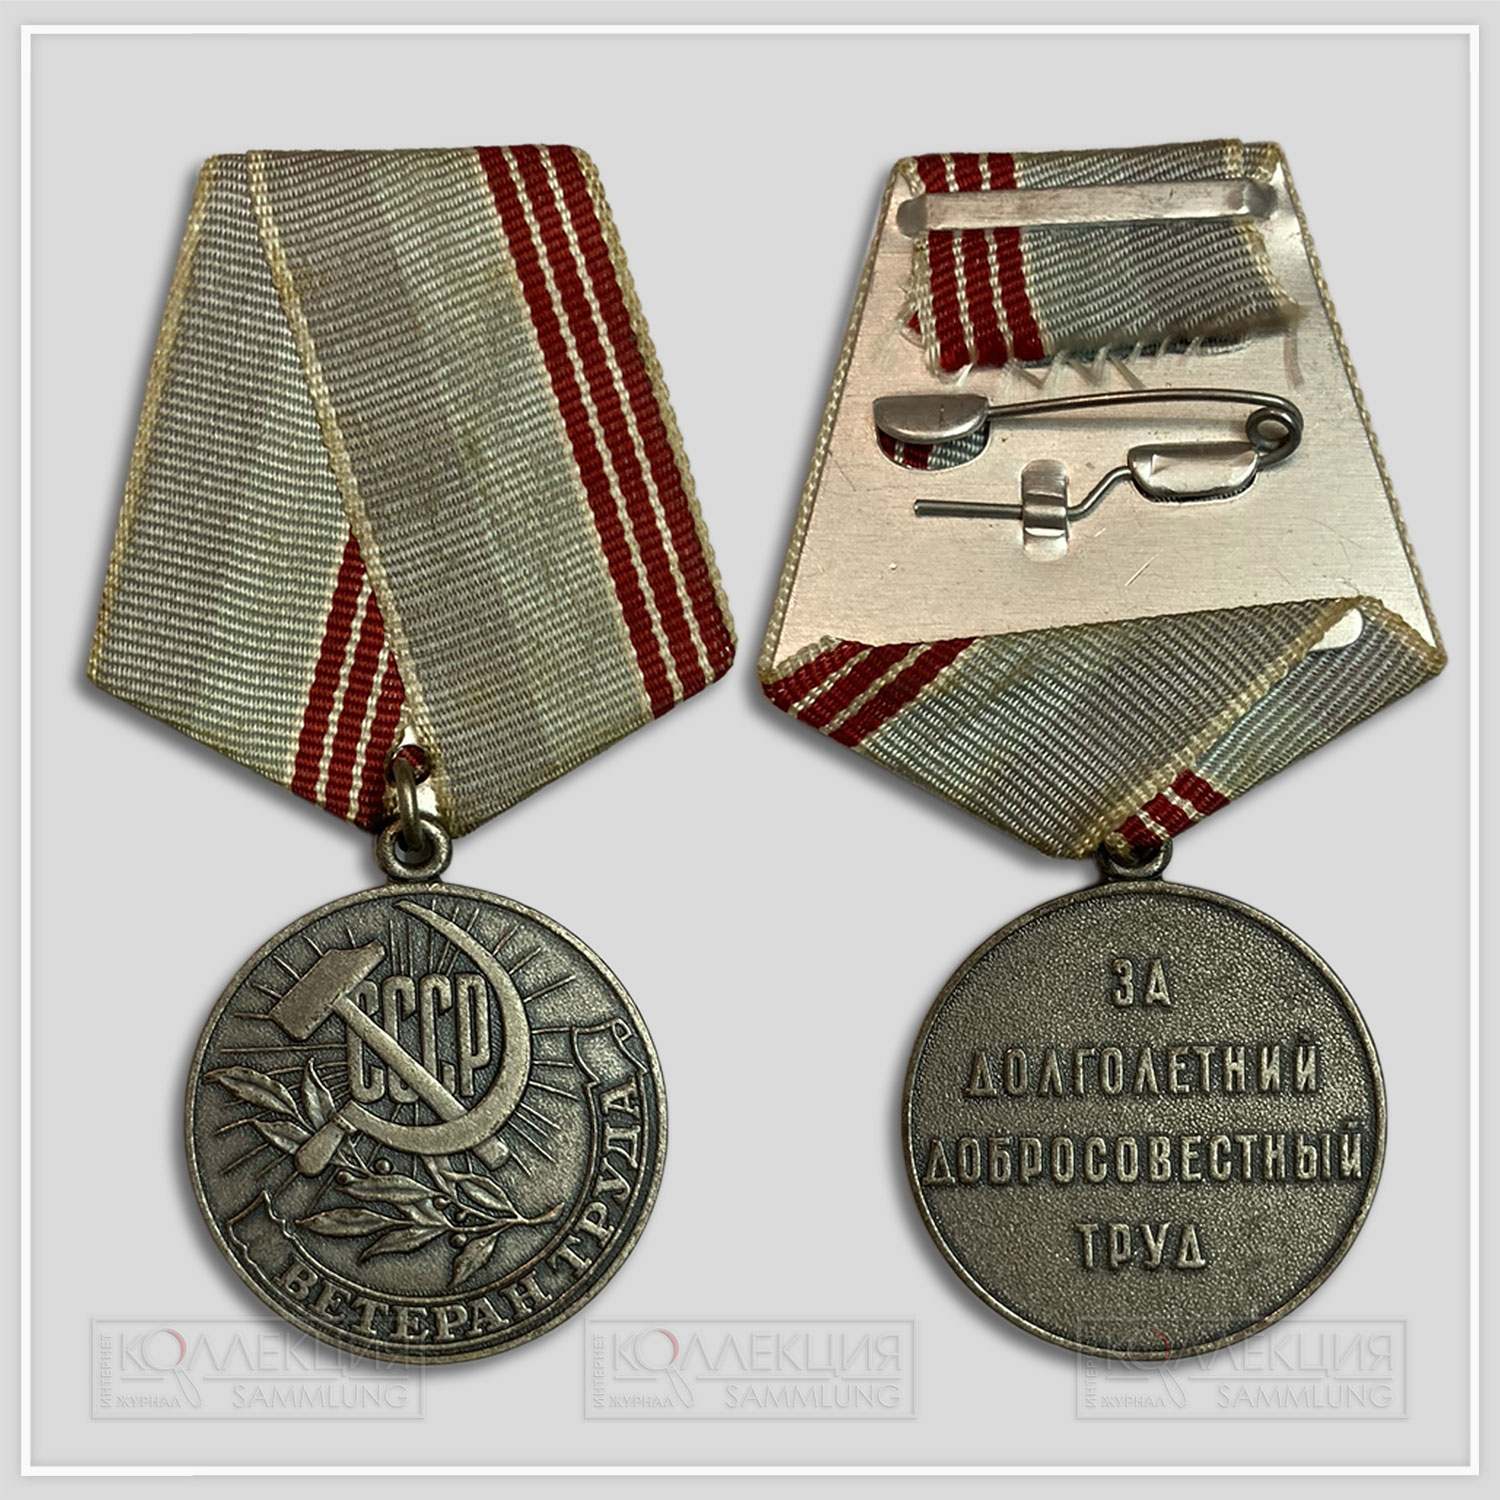 Медаль «Ветеран труда» за долголетний добросовестный труд от имени Президиума Верховного Совета СССР. 11.09.1985